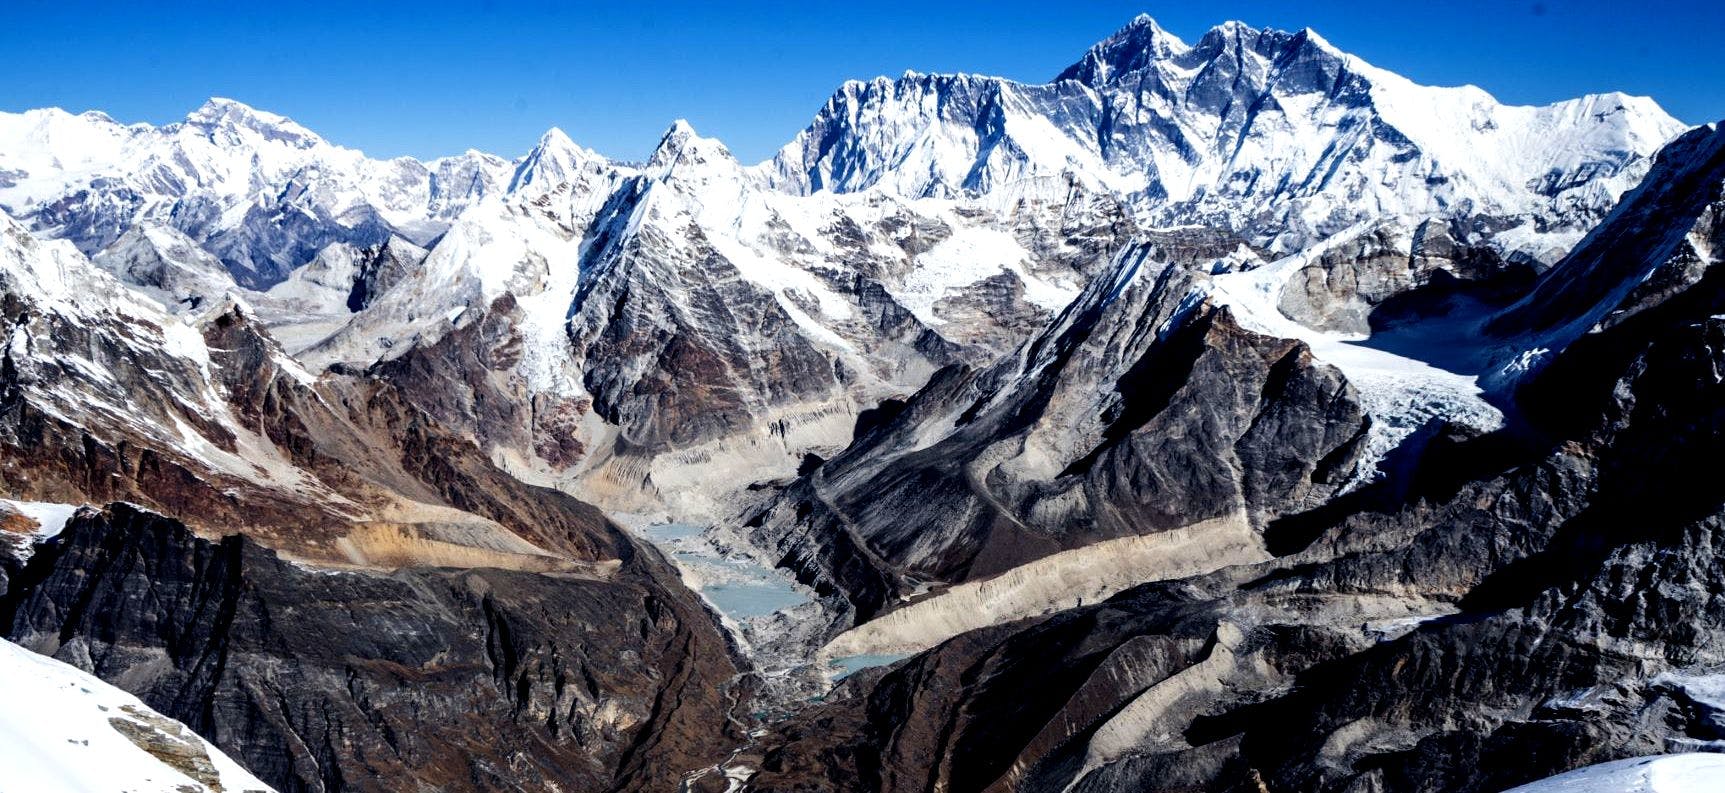 10 Best Peak Climbing in Nepal